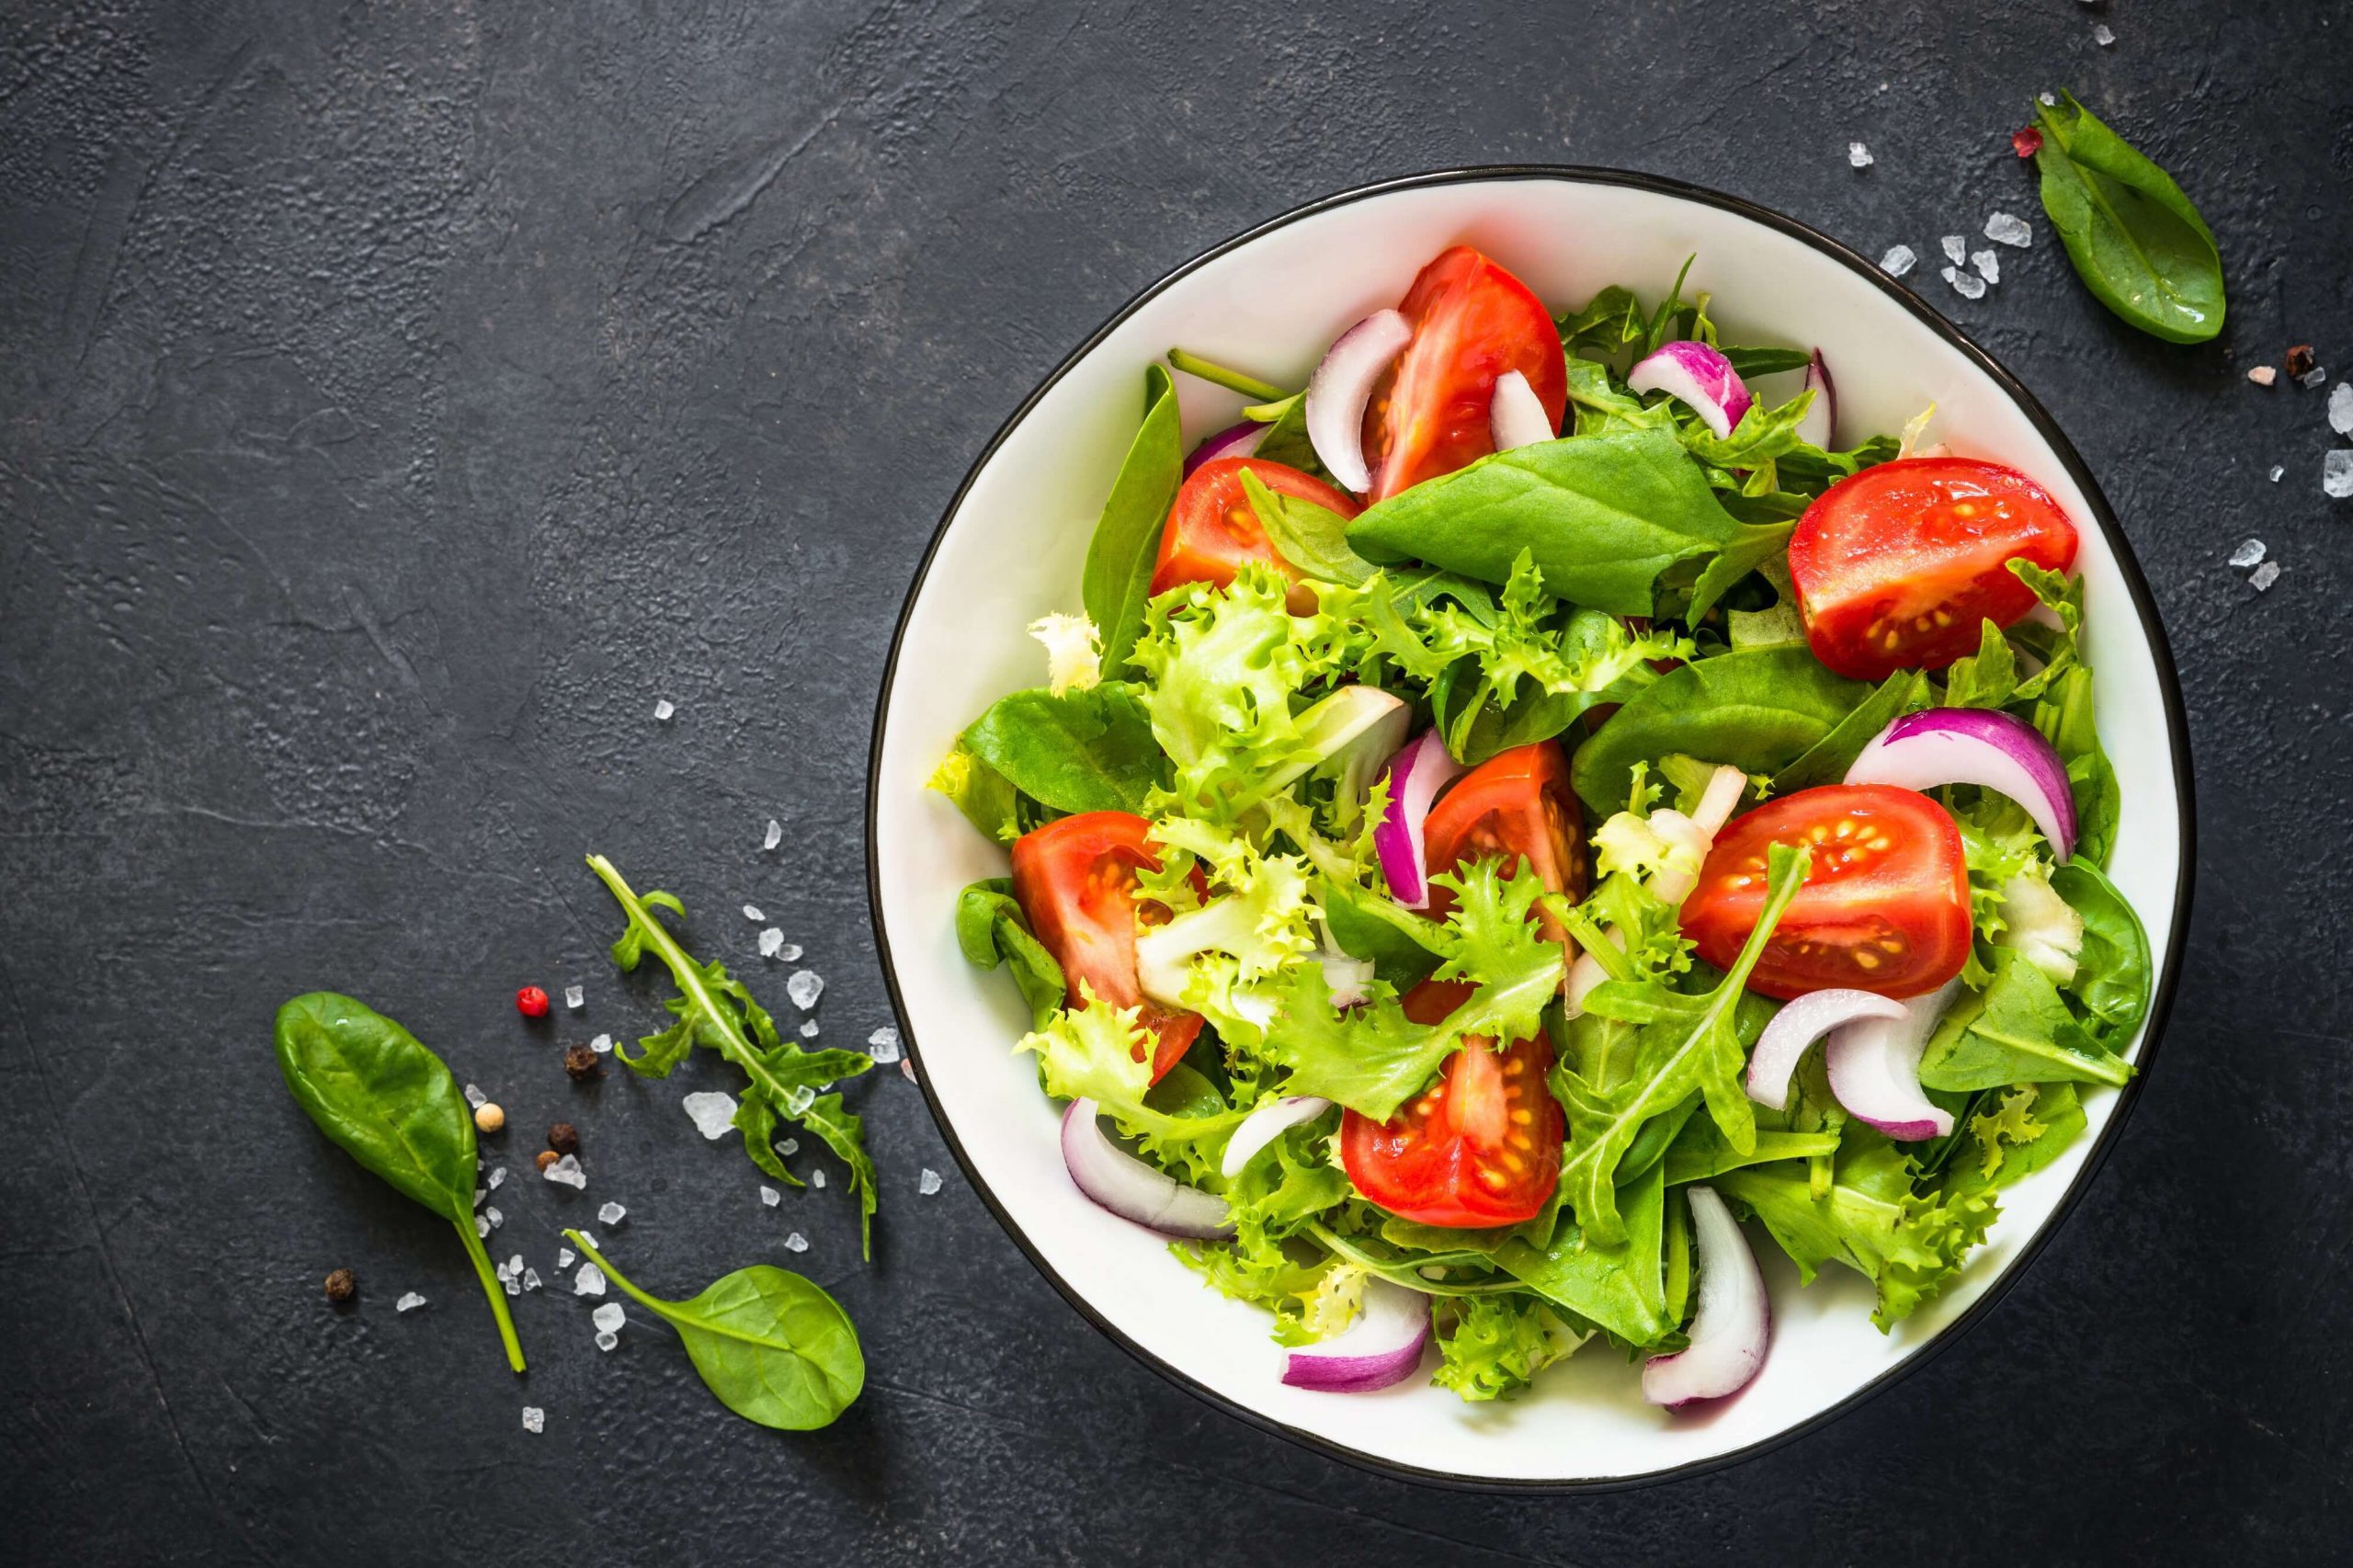 Salade verte accompagne d'oignons, de tomates et autres produits saisoniers